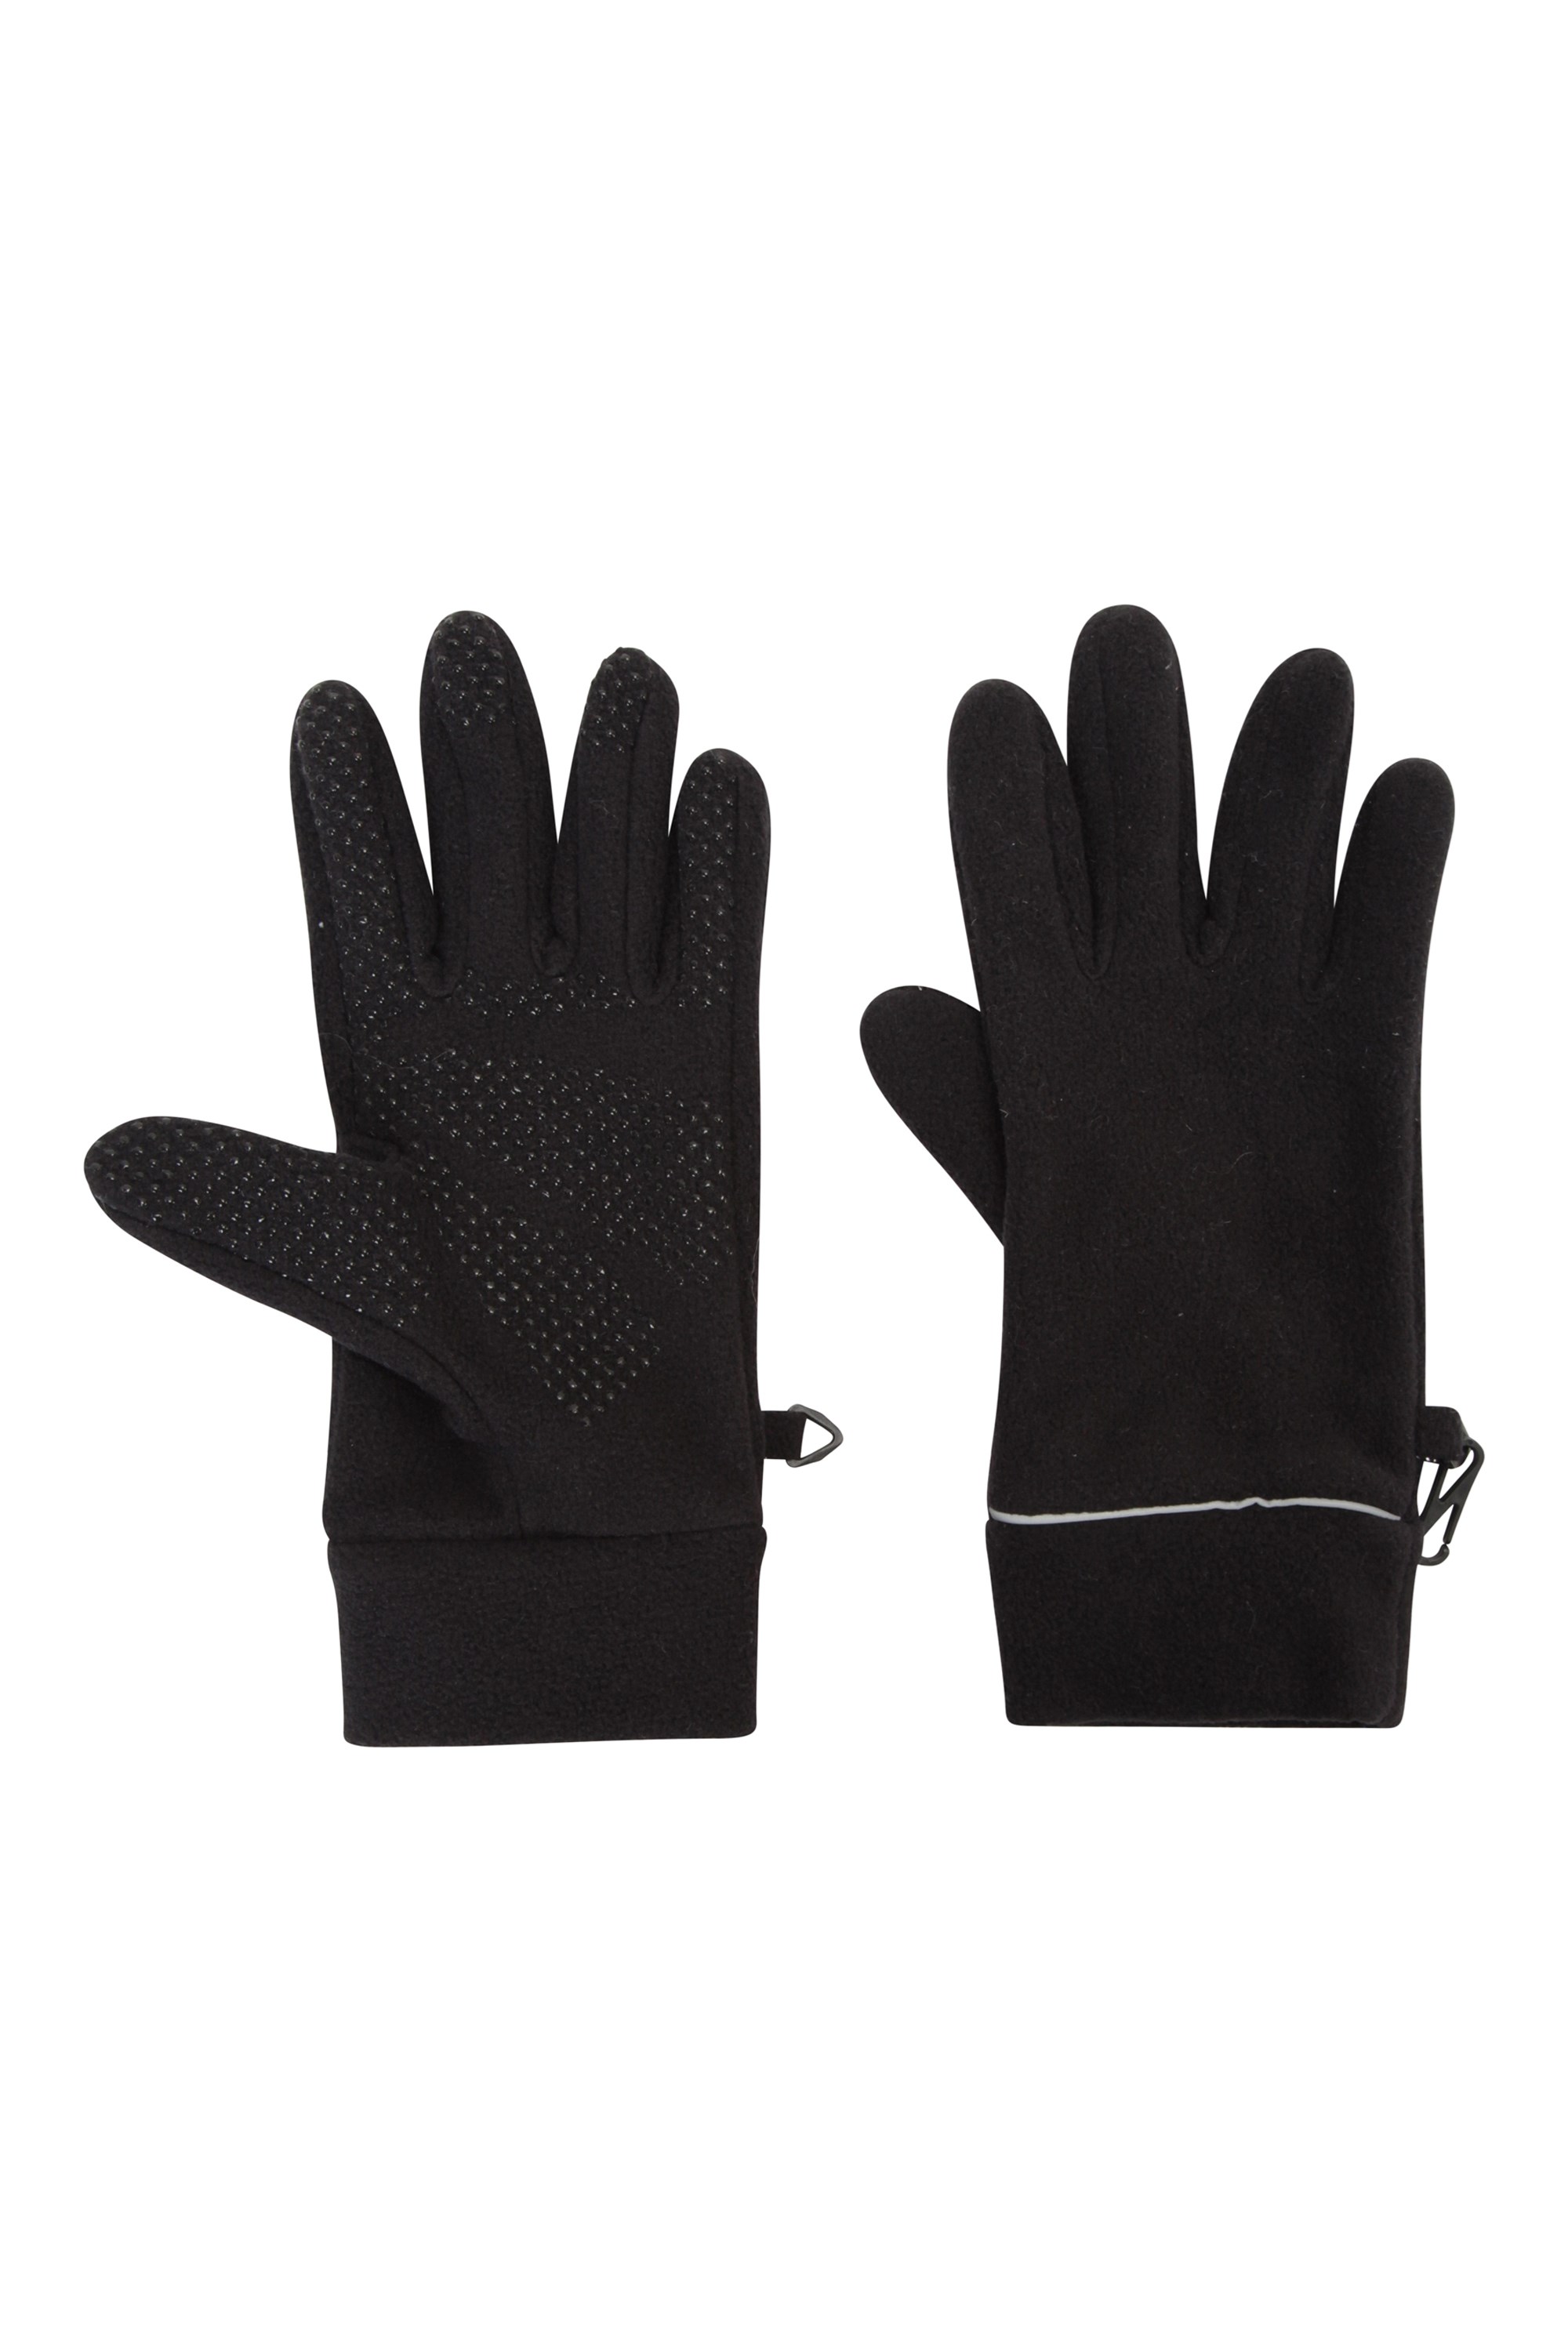 ladies thermal waterproof gloves